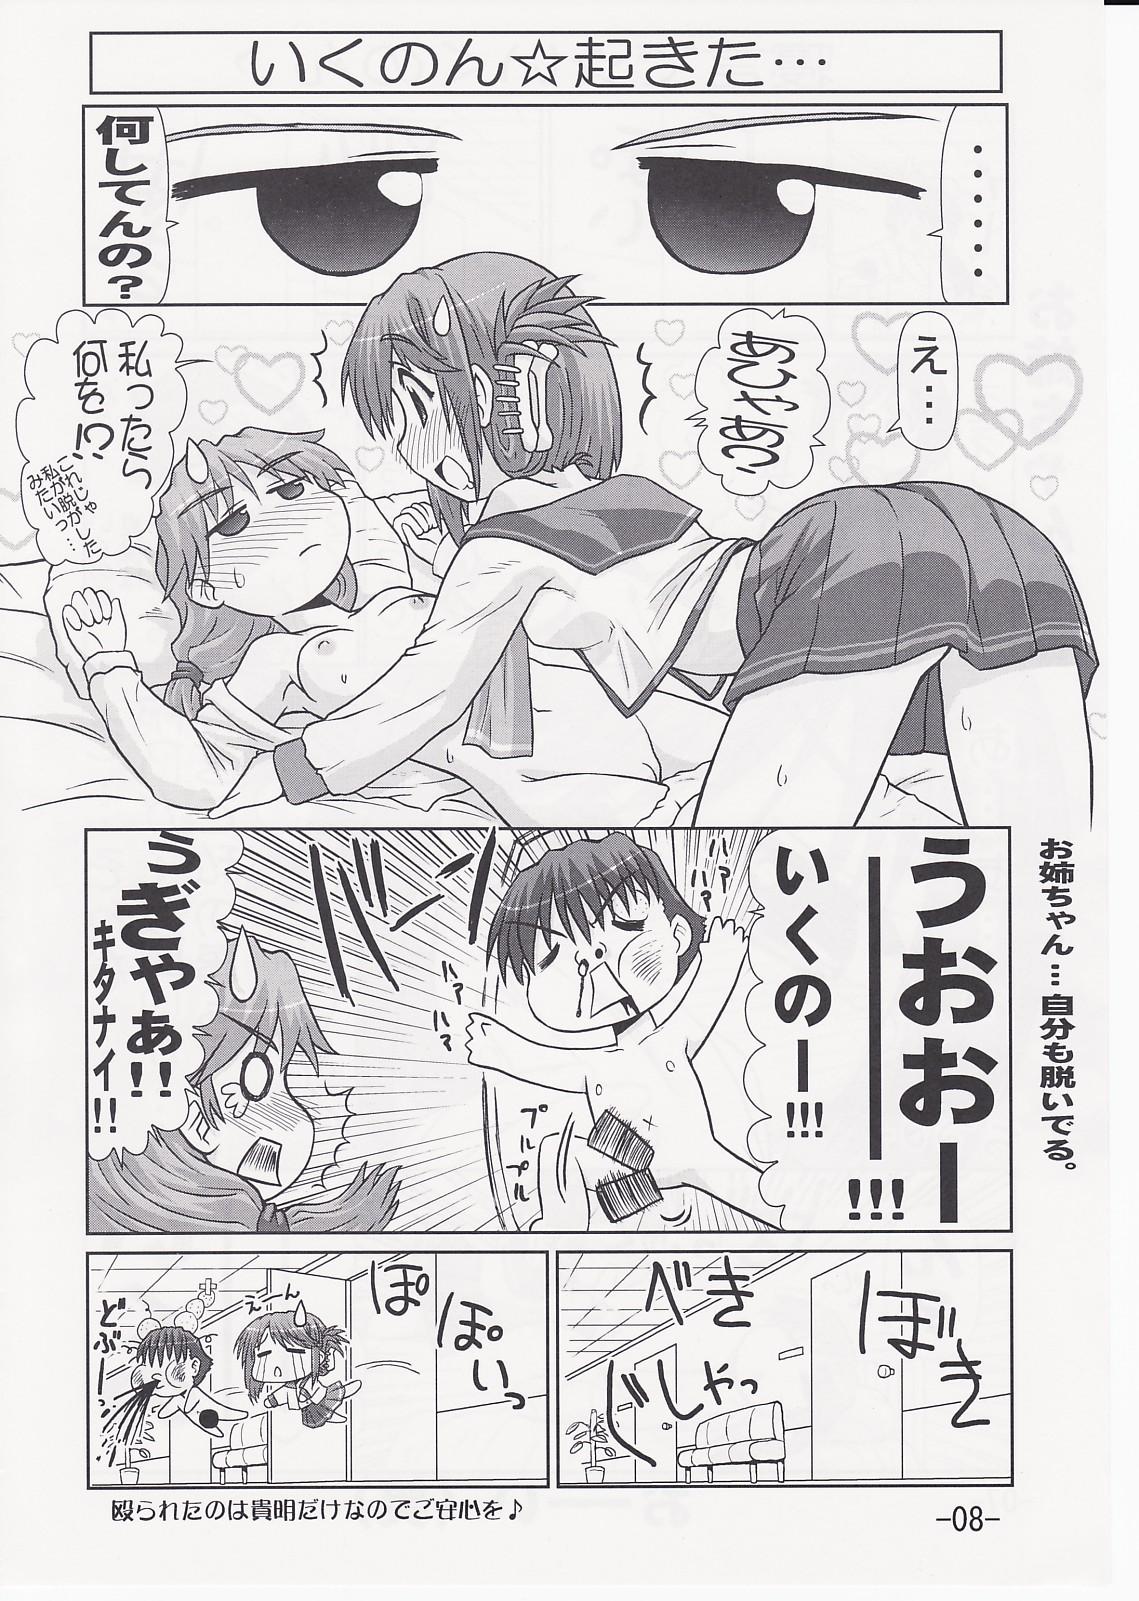 Ikunon Manga 2 6